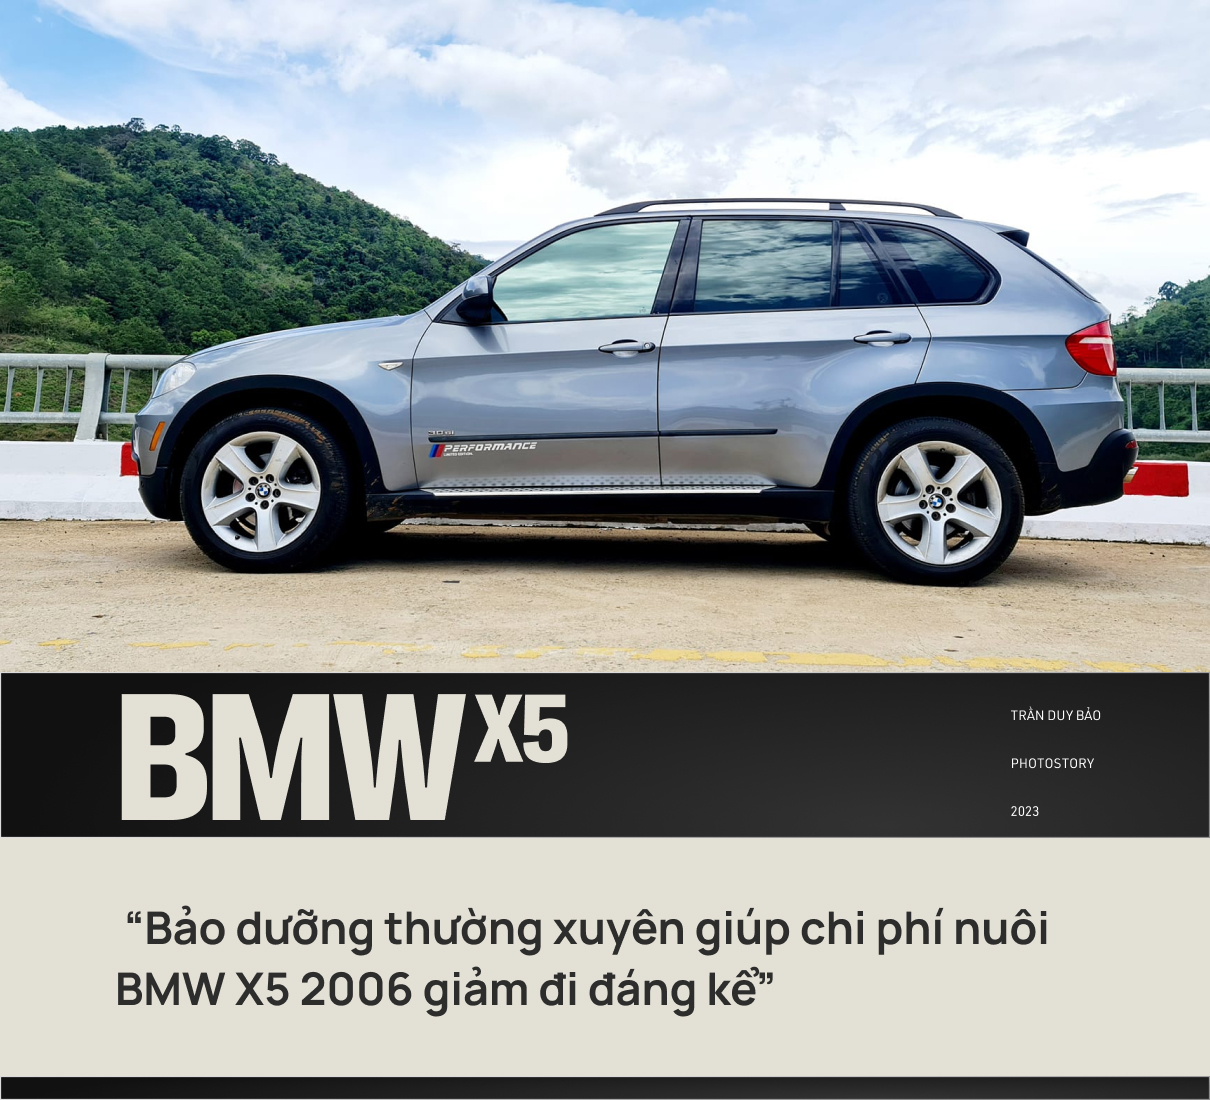 Mang BMW X5 18 năm tuổi đi xuyên Việt 5 lần, kiến trúc sư nói lên tâm trạng đúng chất Bimmer: ‘Đừng đi nhiều kẻo bị nghiện’ - Ảnh 5.